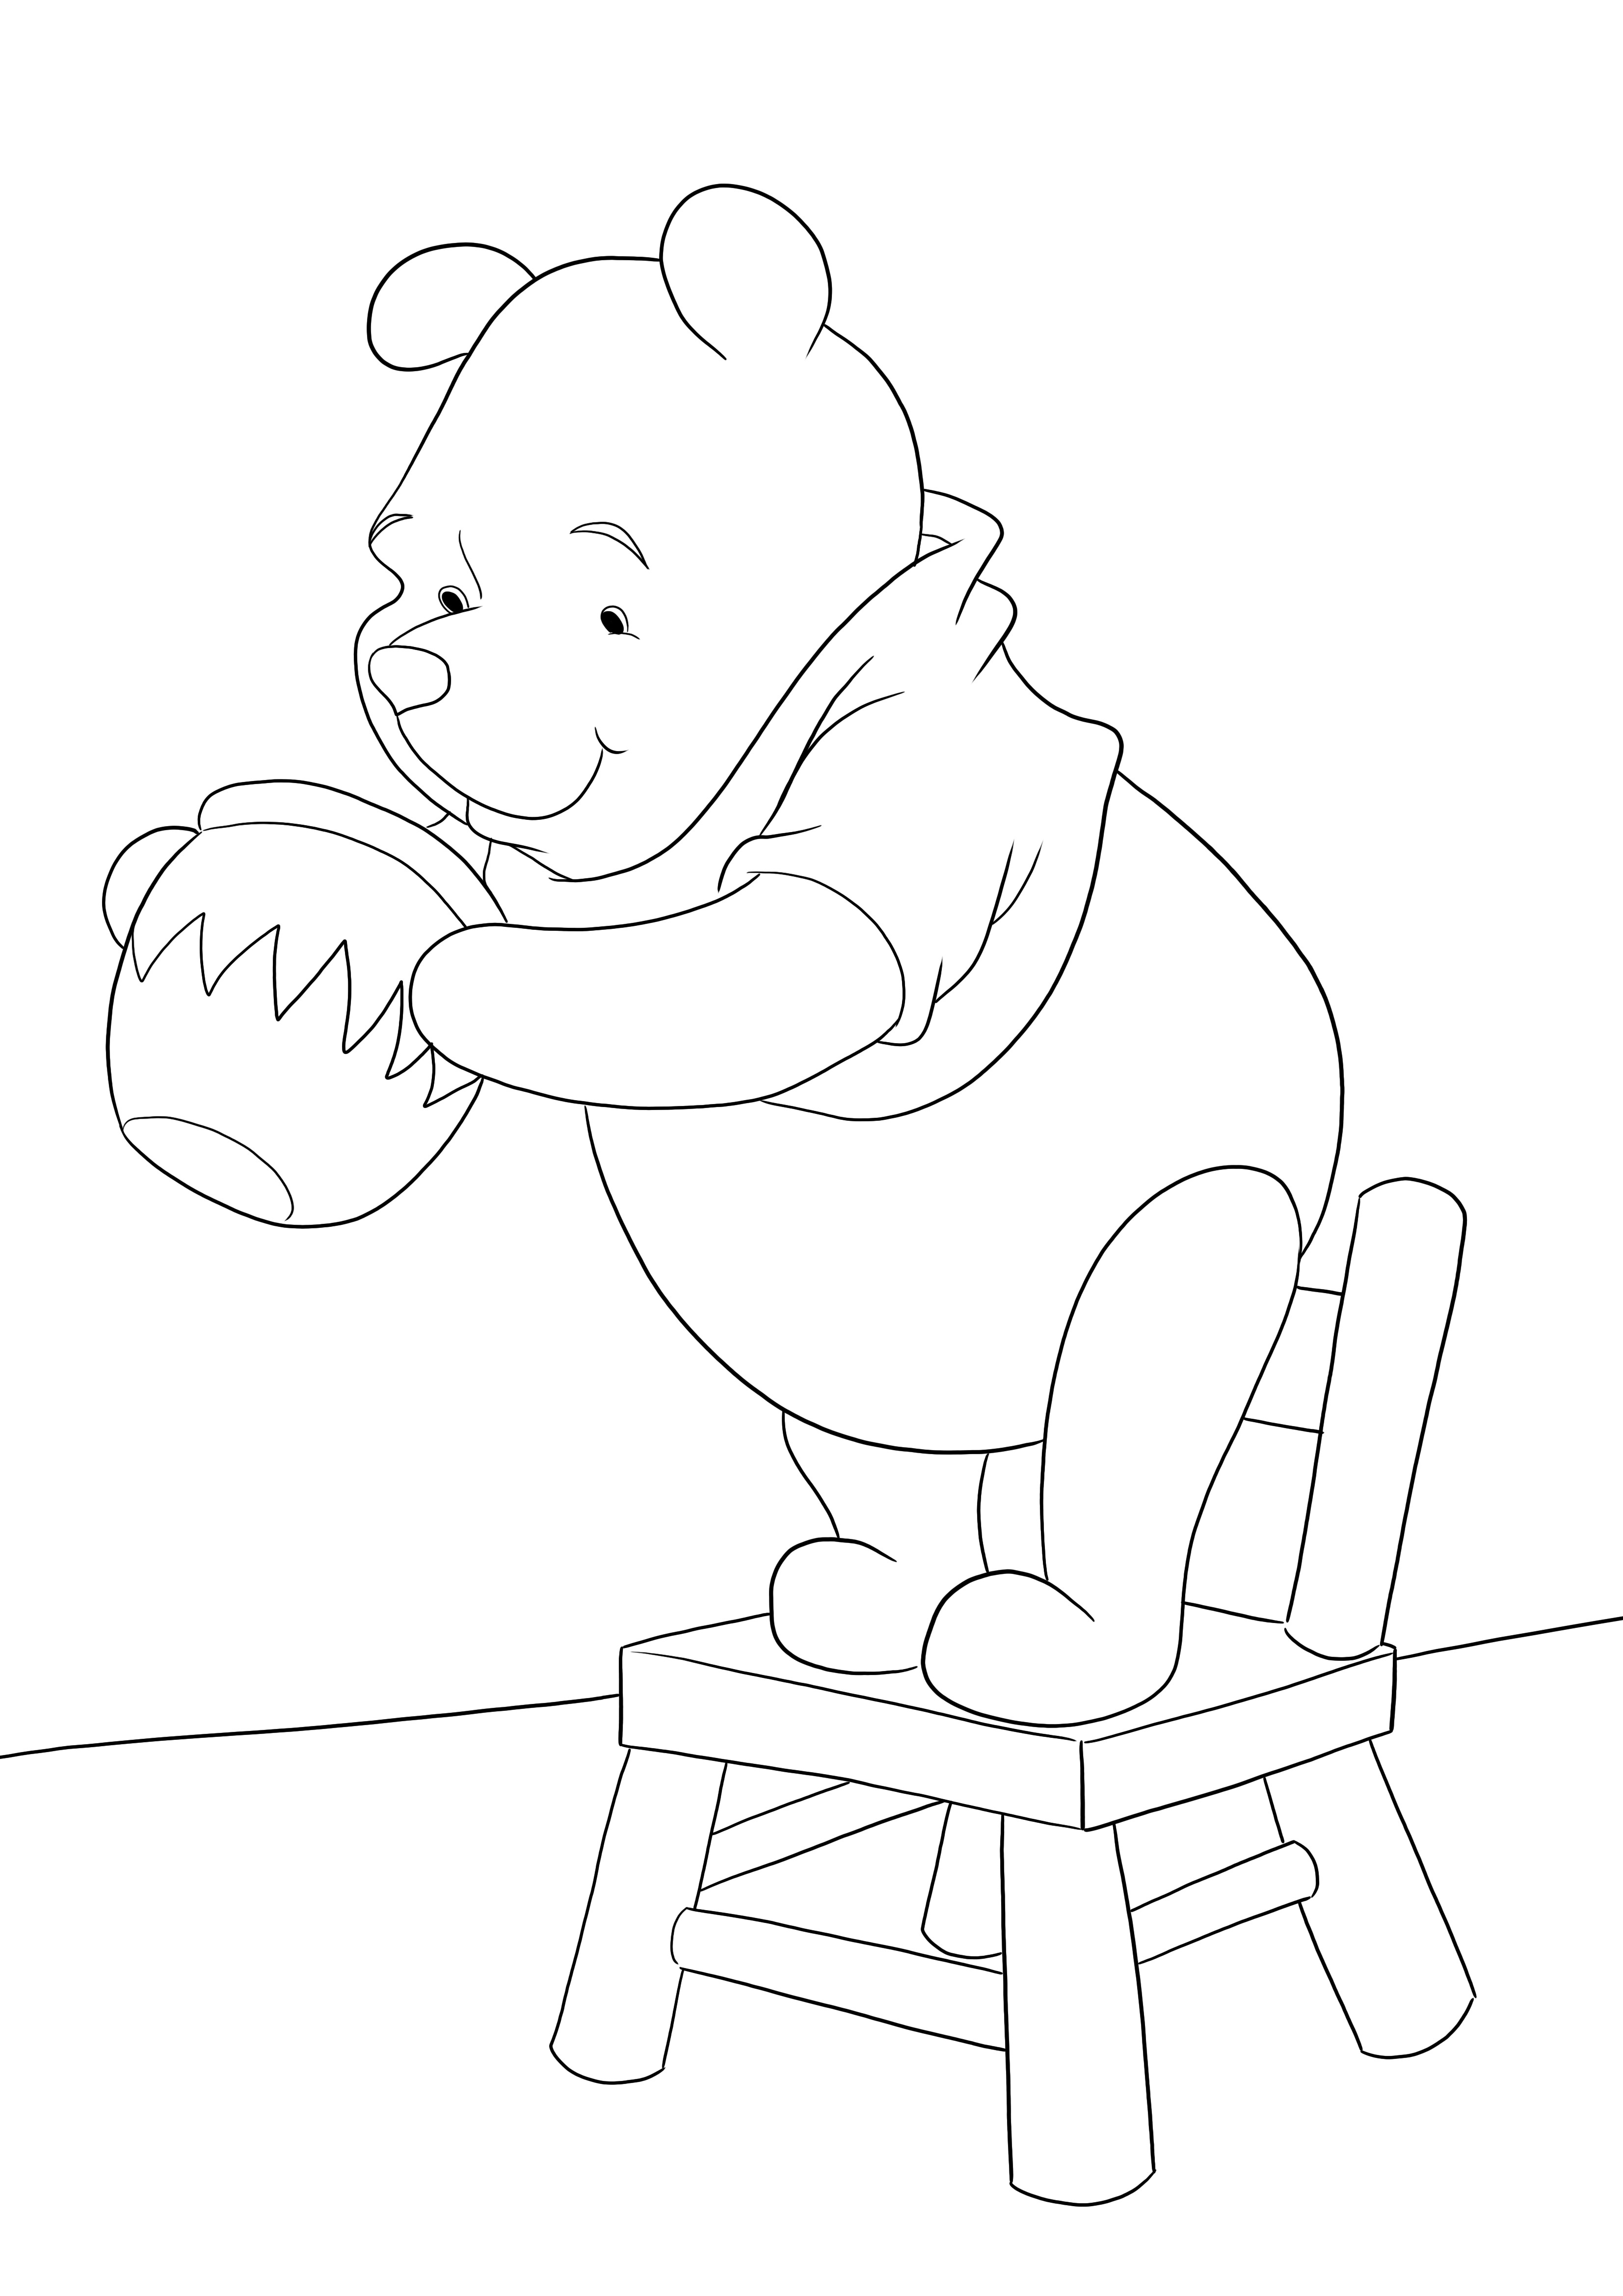 Uma imagem para colorir de Winnie procurando mel pronta para imprimir ou baixar